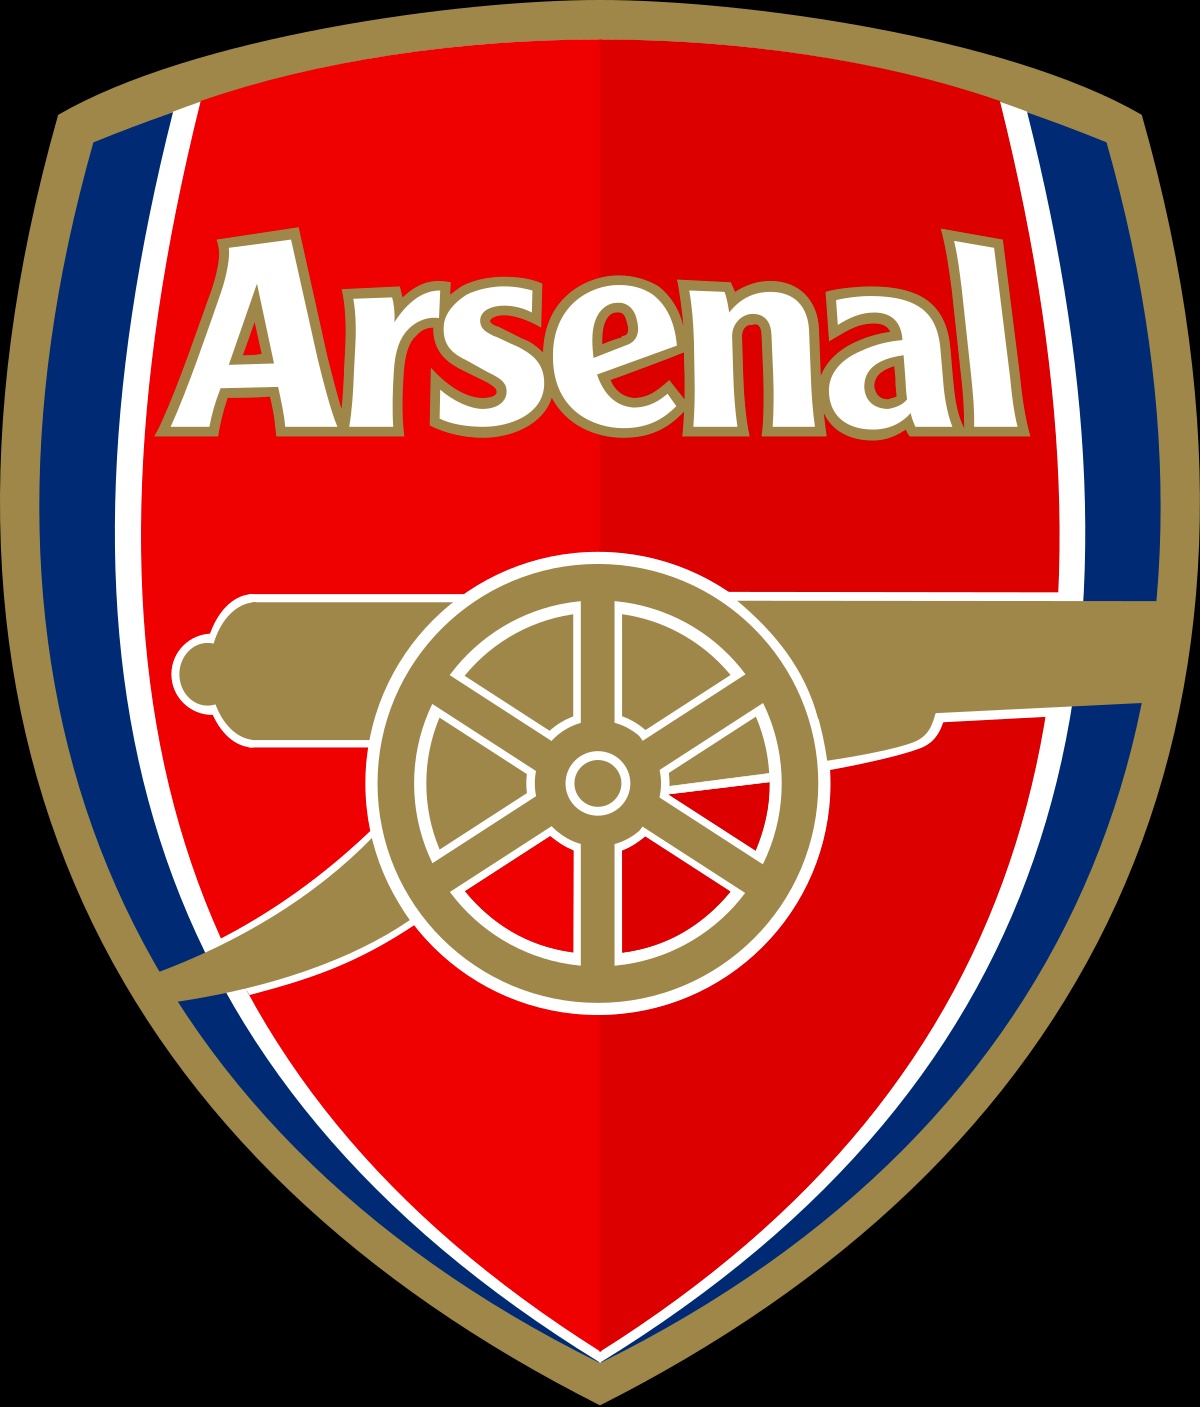 Đội hình xuất sắc nhất Arsenal trong hơn 1 thập kỉ qua